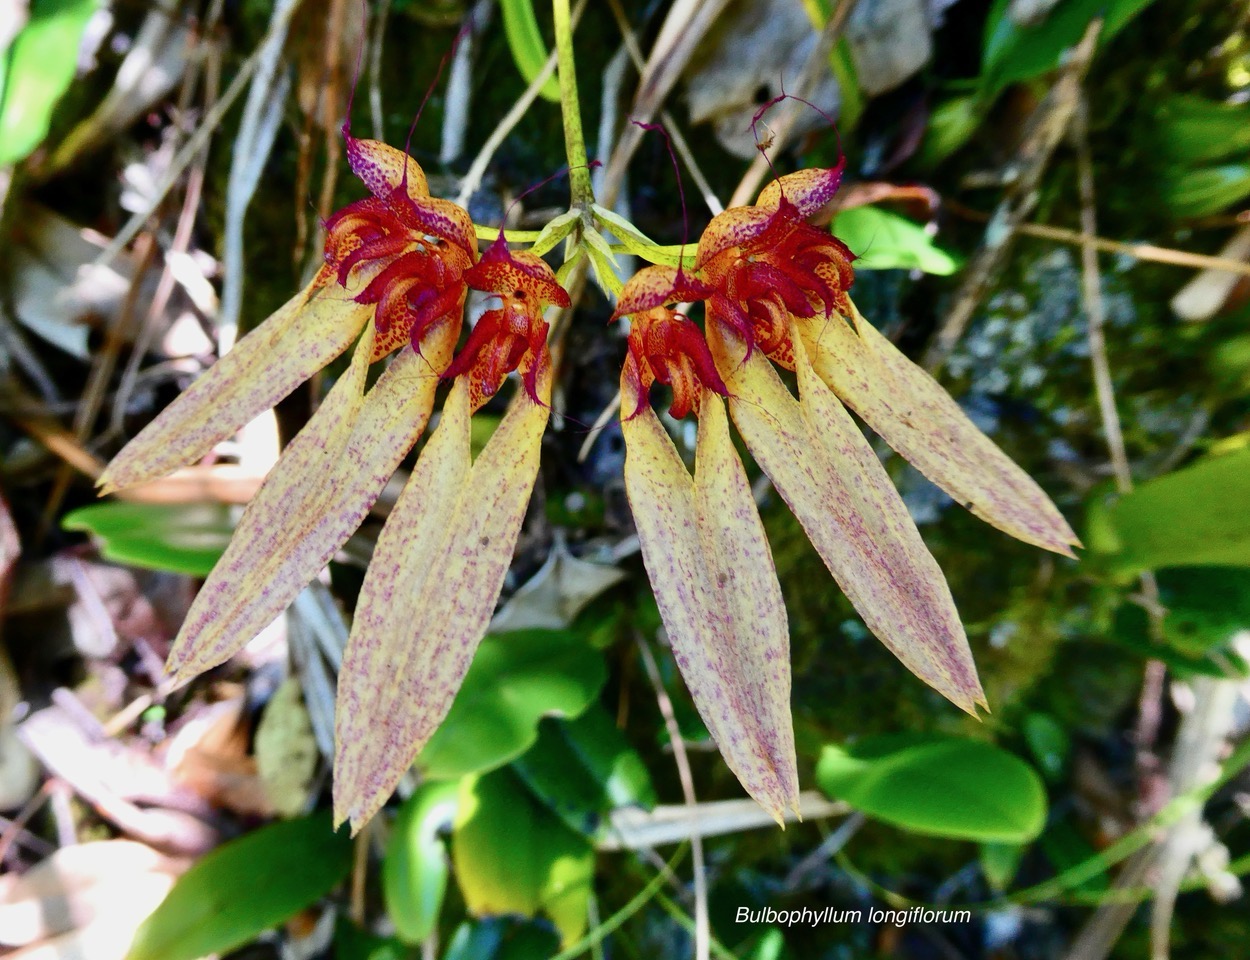 Bulbophyllum longiflorum.orchidaceae.indigène Réunion. (1).jpeg